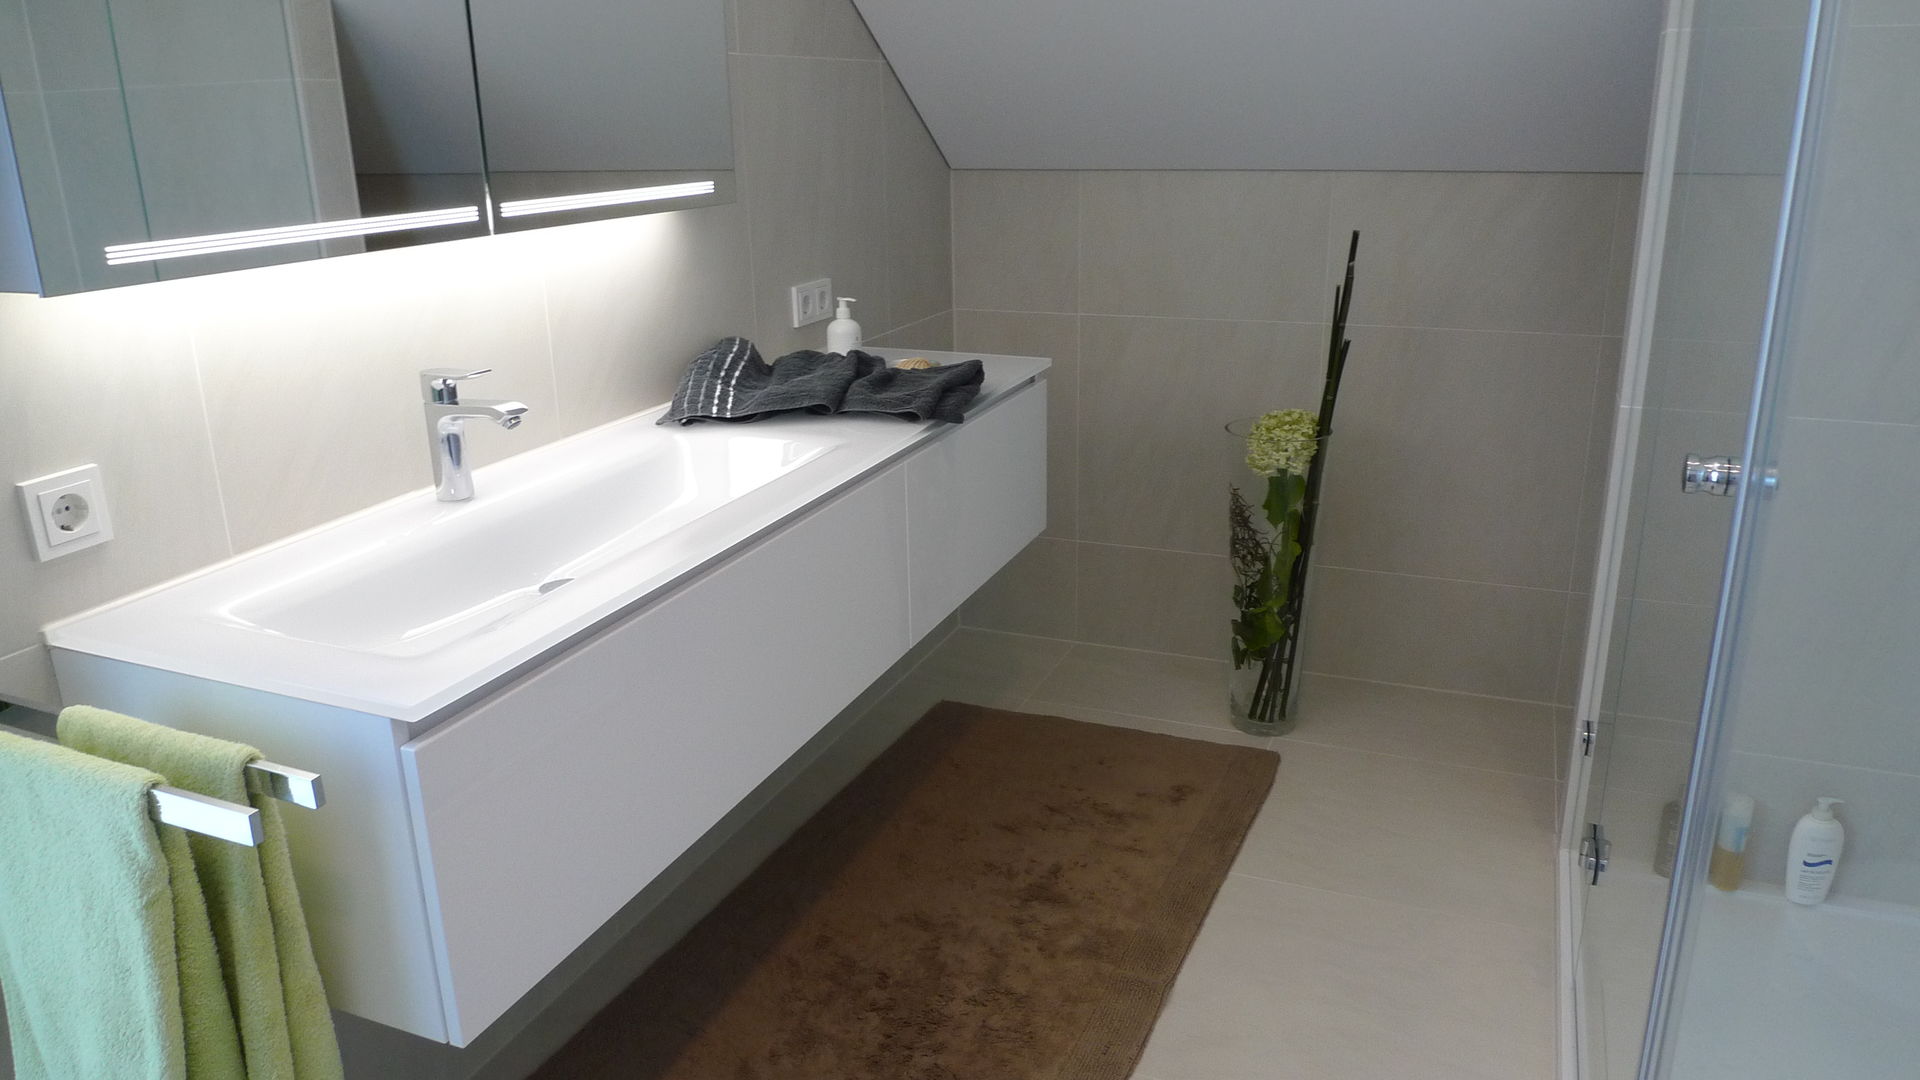 Eine neues Badezimmer unterm Dach. Kein Problem für Badplaner Haimo Steinmetz. Der Badprofi wenn es um die Renovierung ihres Bades geht.